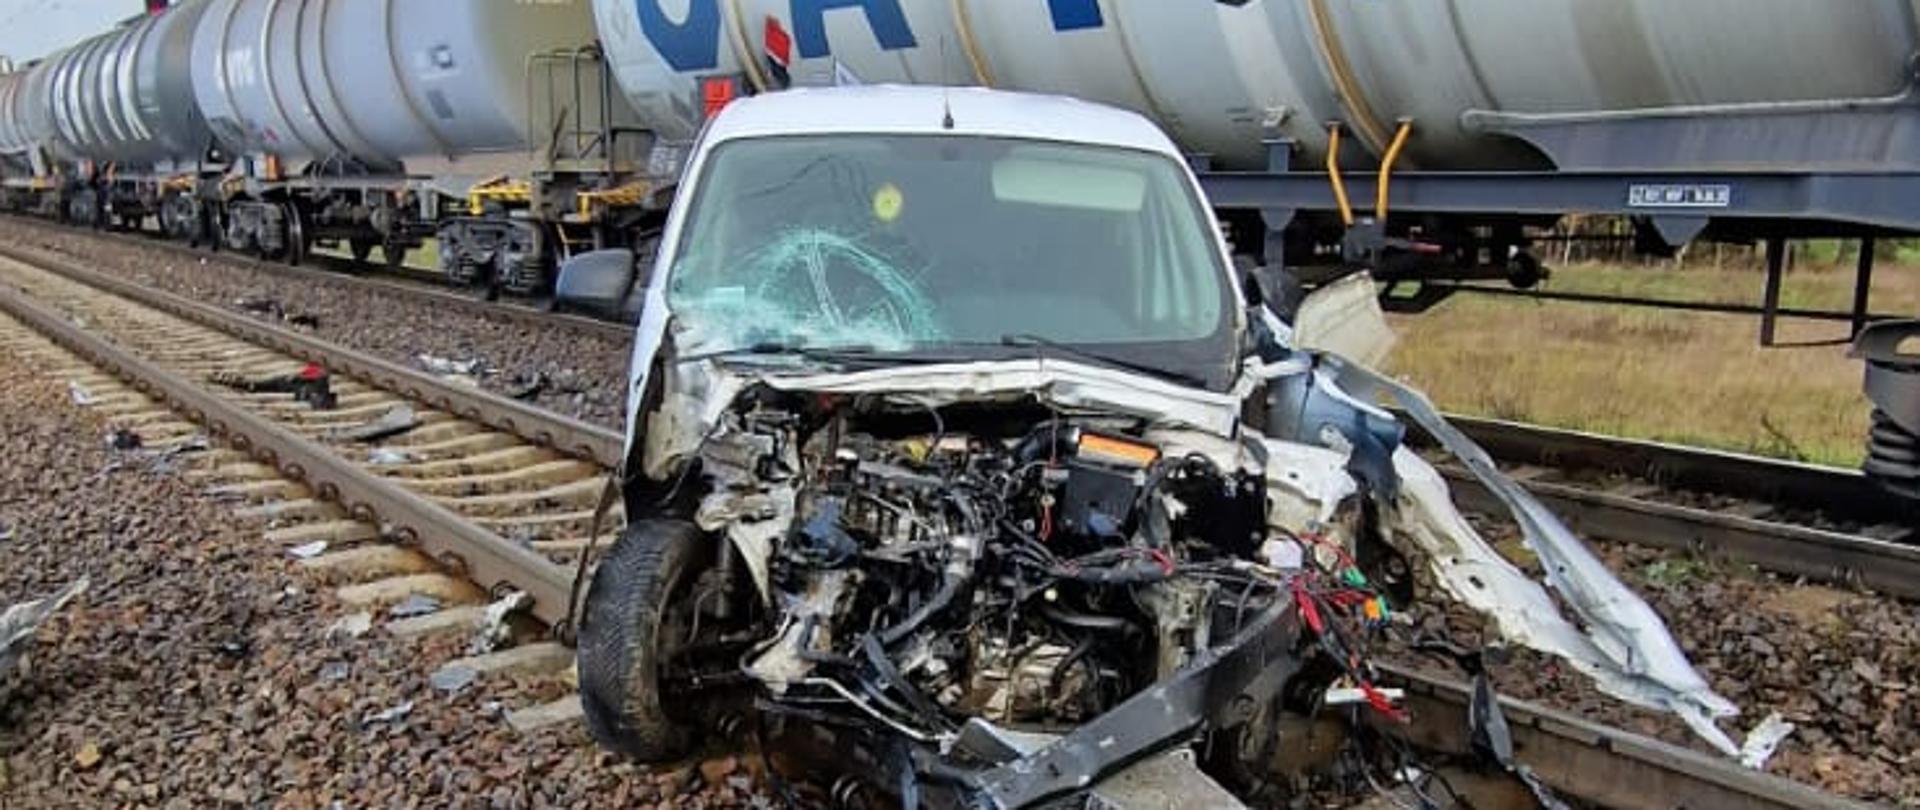 Zdjęcie przedstawia rozbity samochód osobowy oraz wagony pociągu towarowego